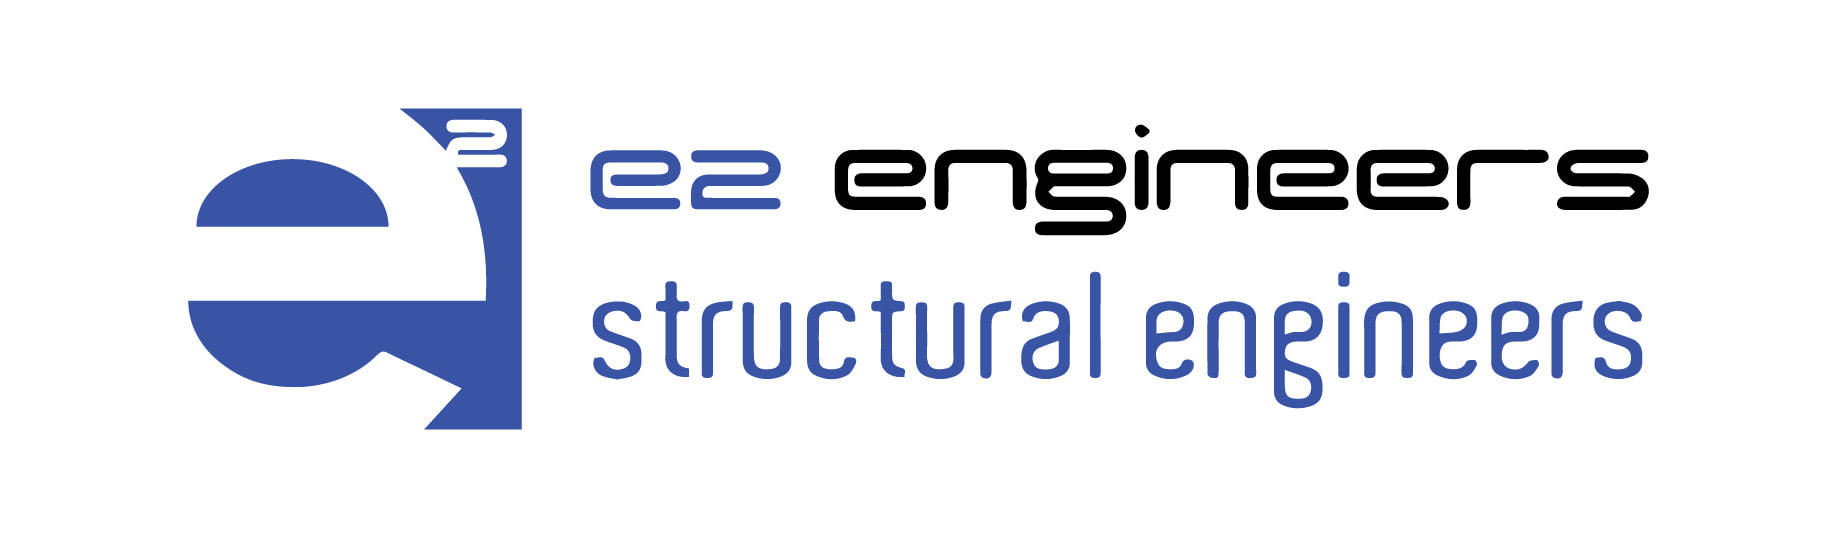 e2 engineers company logo